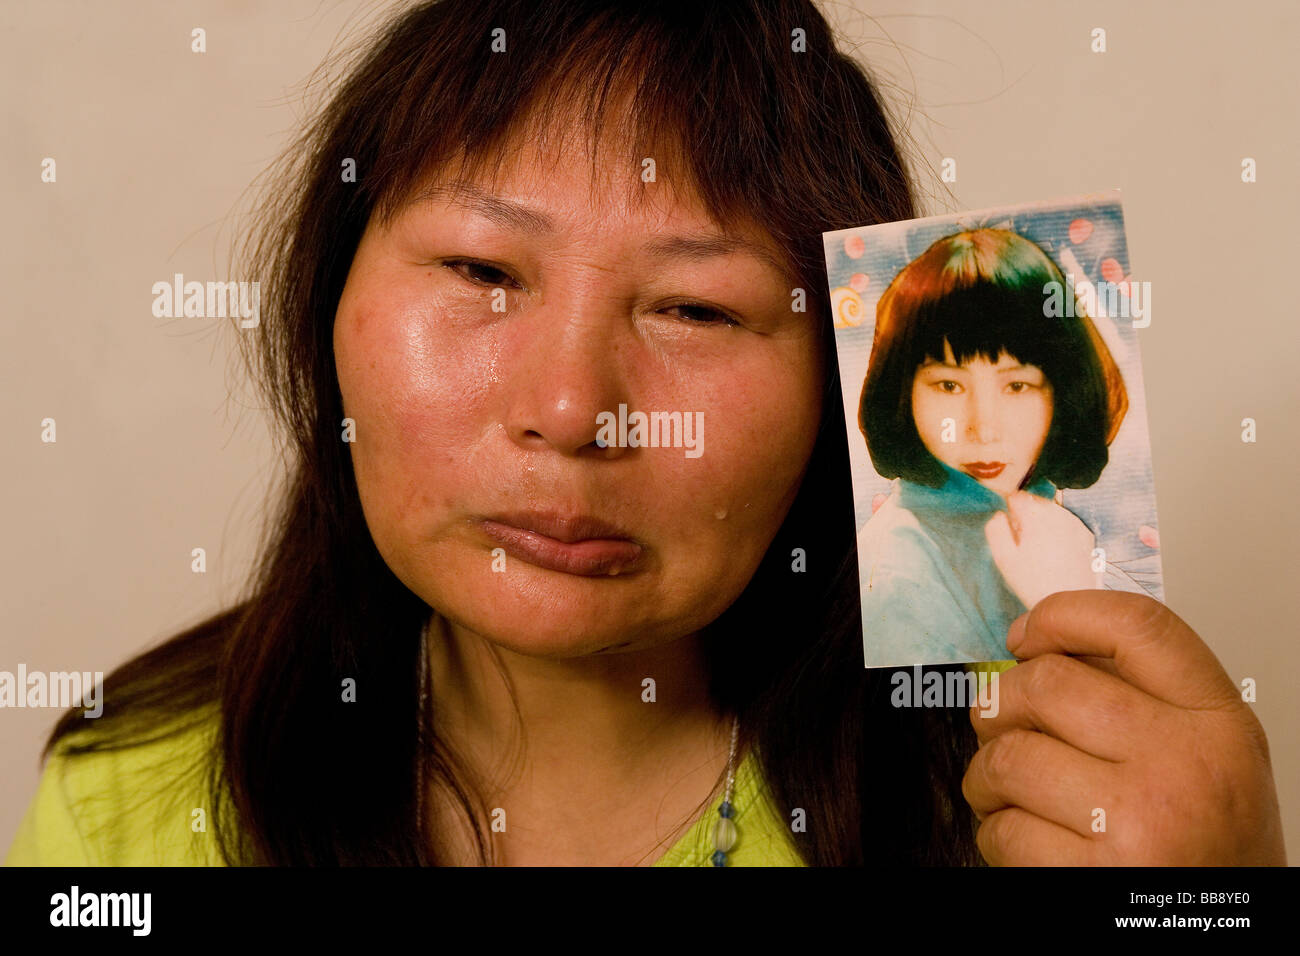 Disfigured Face Stock Photos & Disfigured Face Stock Images - Alamy1300 x 956